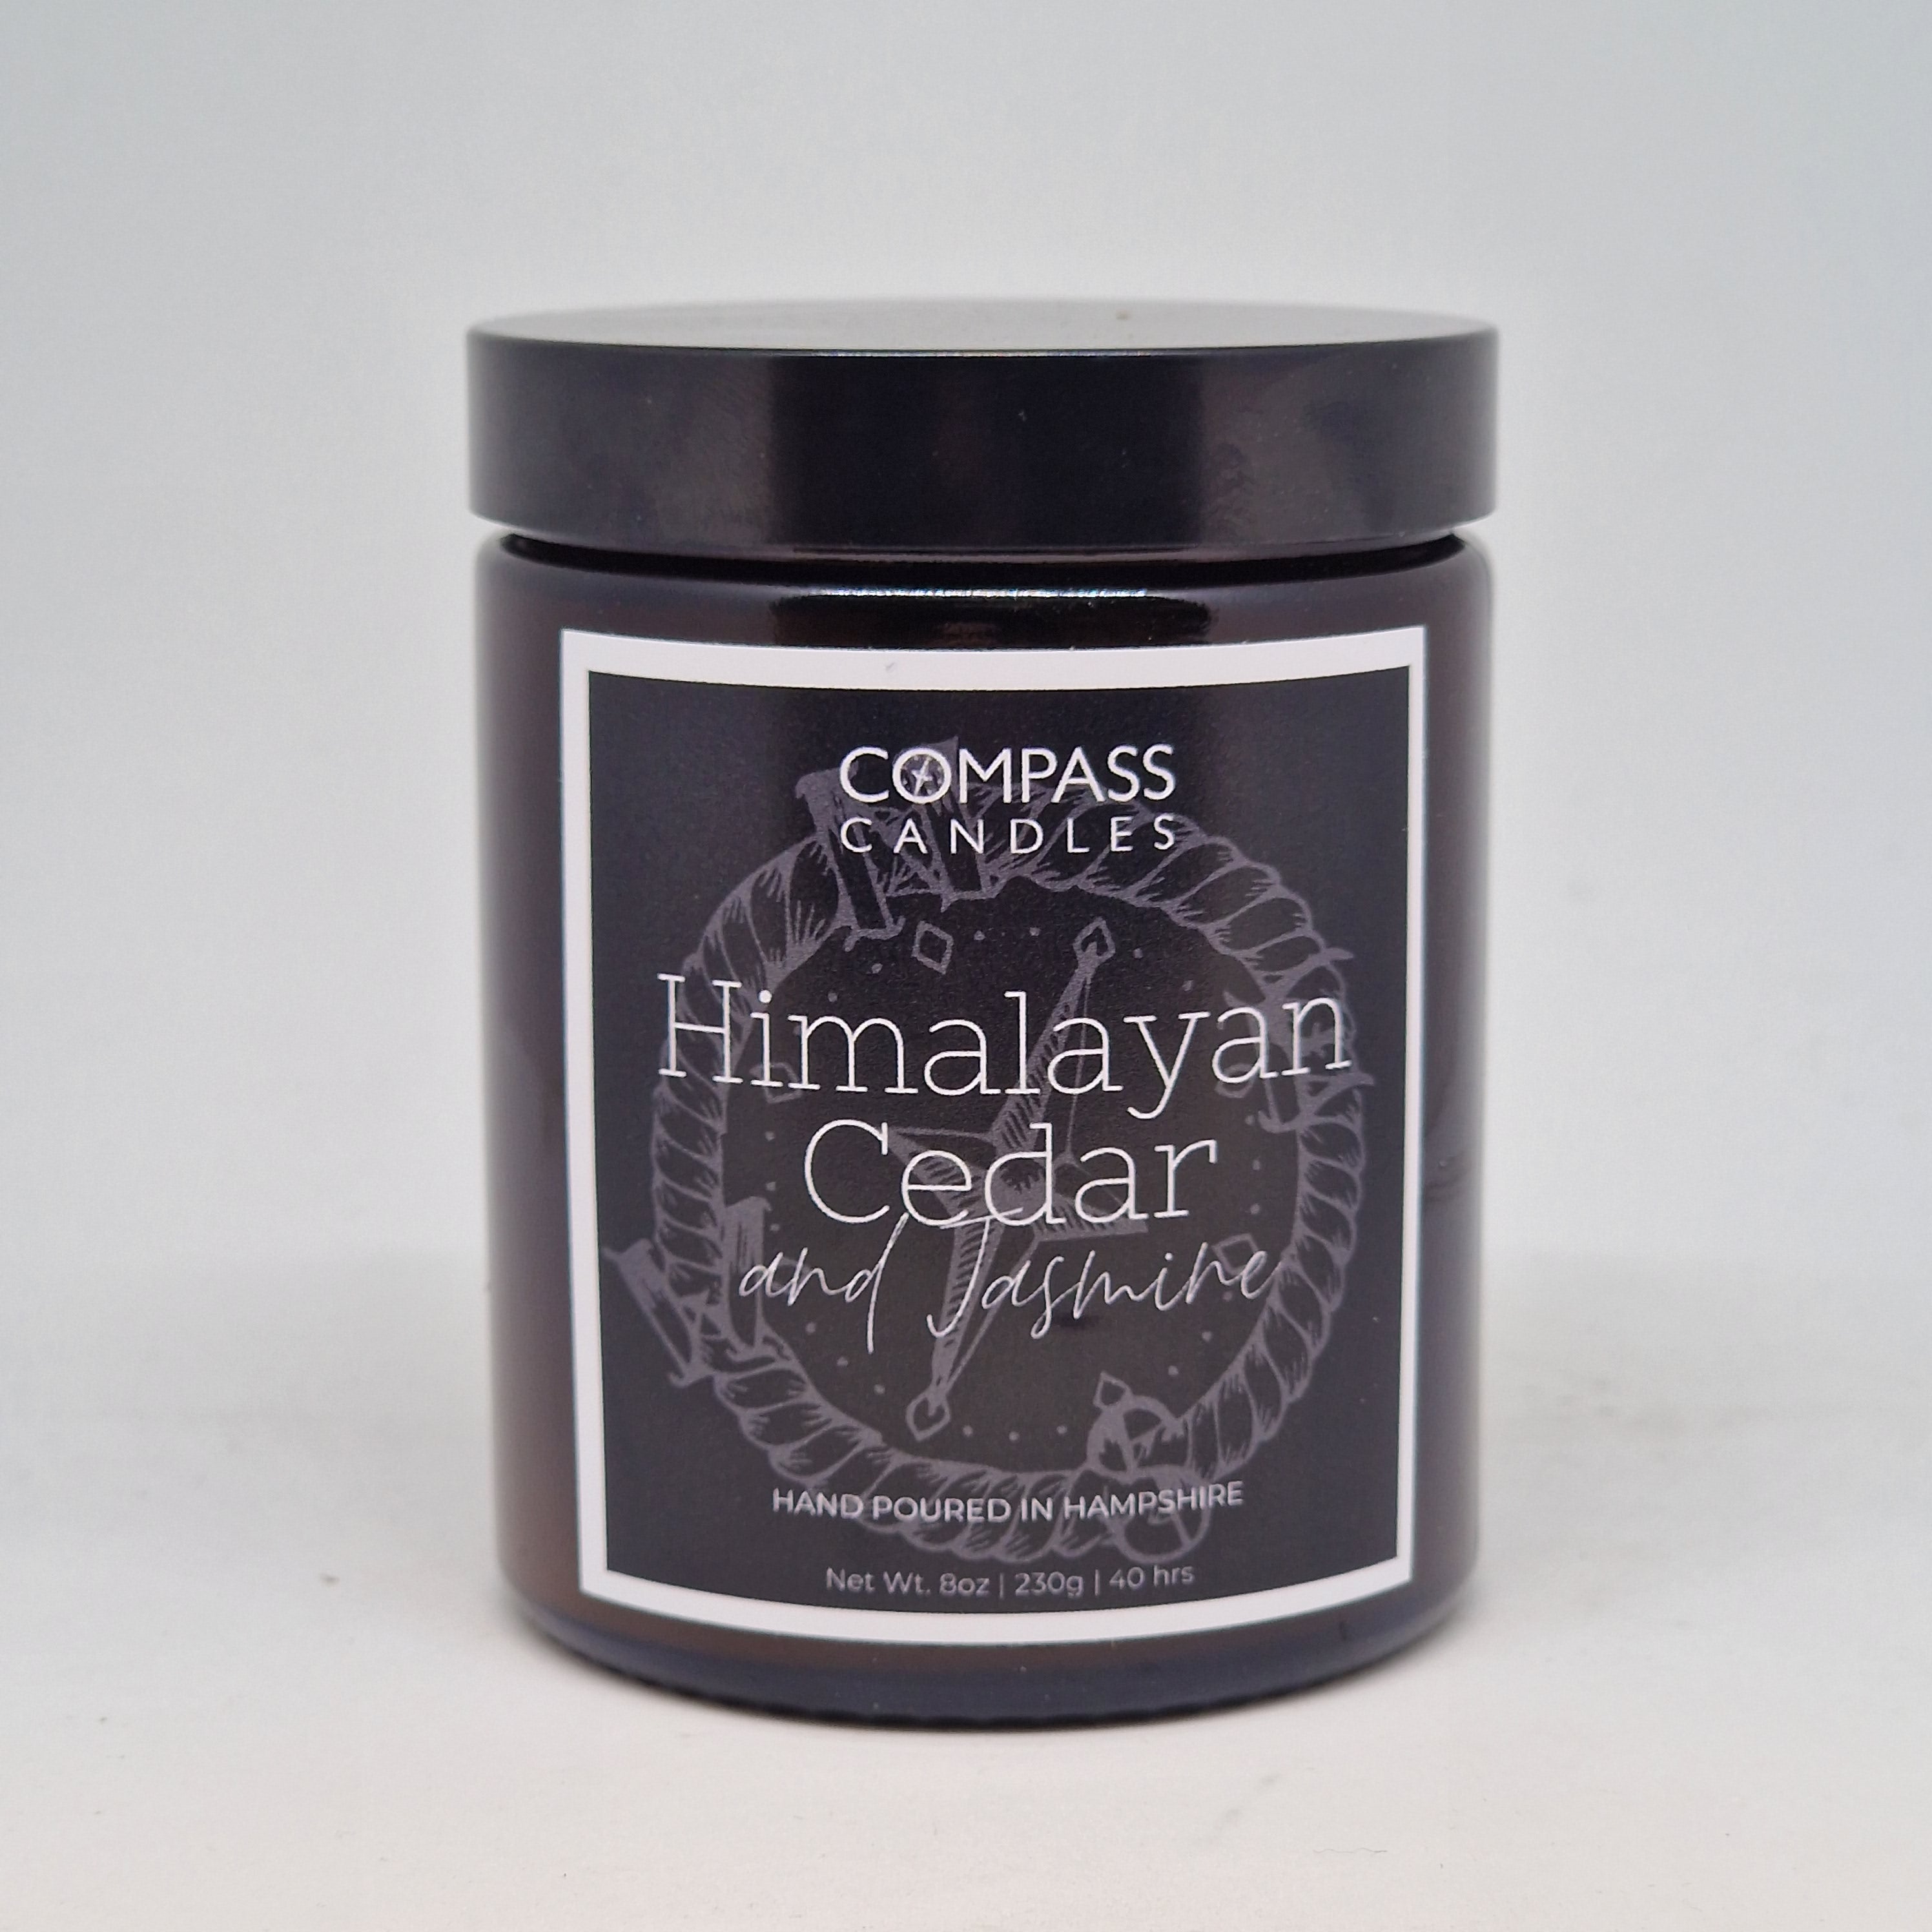 Himalayan Cedar & Jasmine Amber Candle